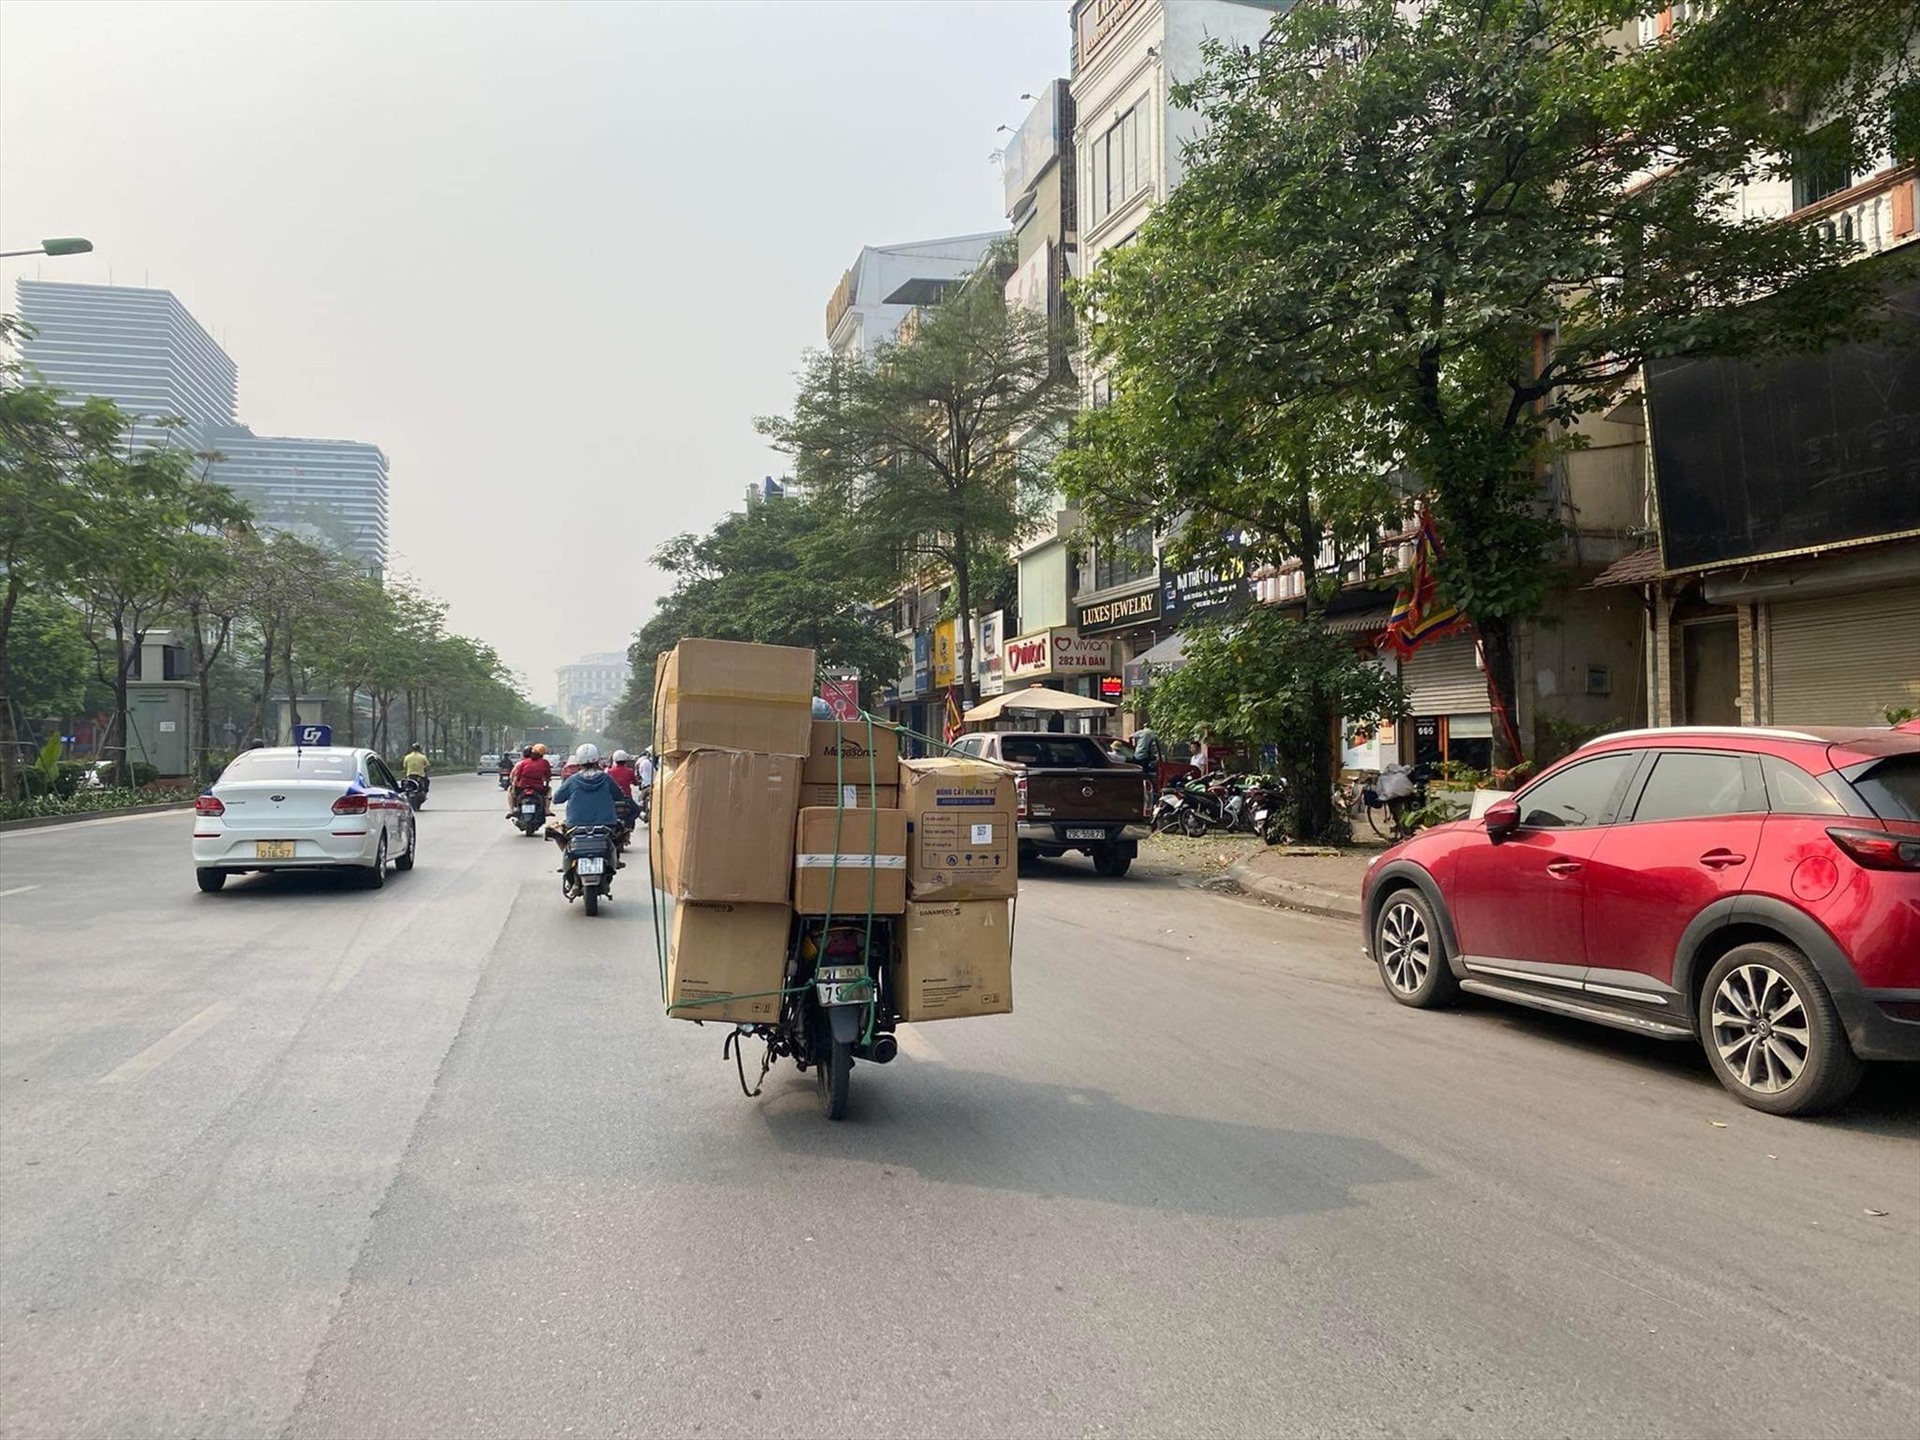 Hàng hoá được nhồi nhét trên xe lưu thông trên đường Xã Đàn, Hà Nội. Ảnh: Vĩnh Hoàng  